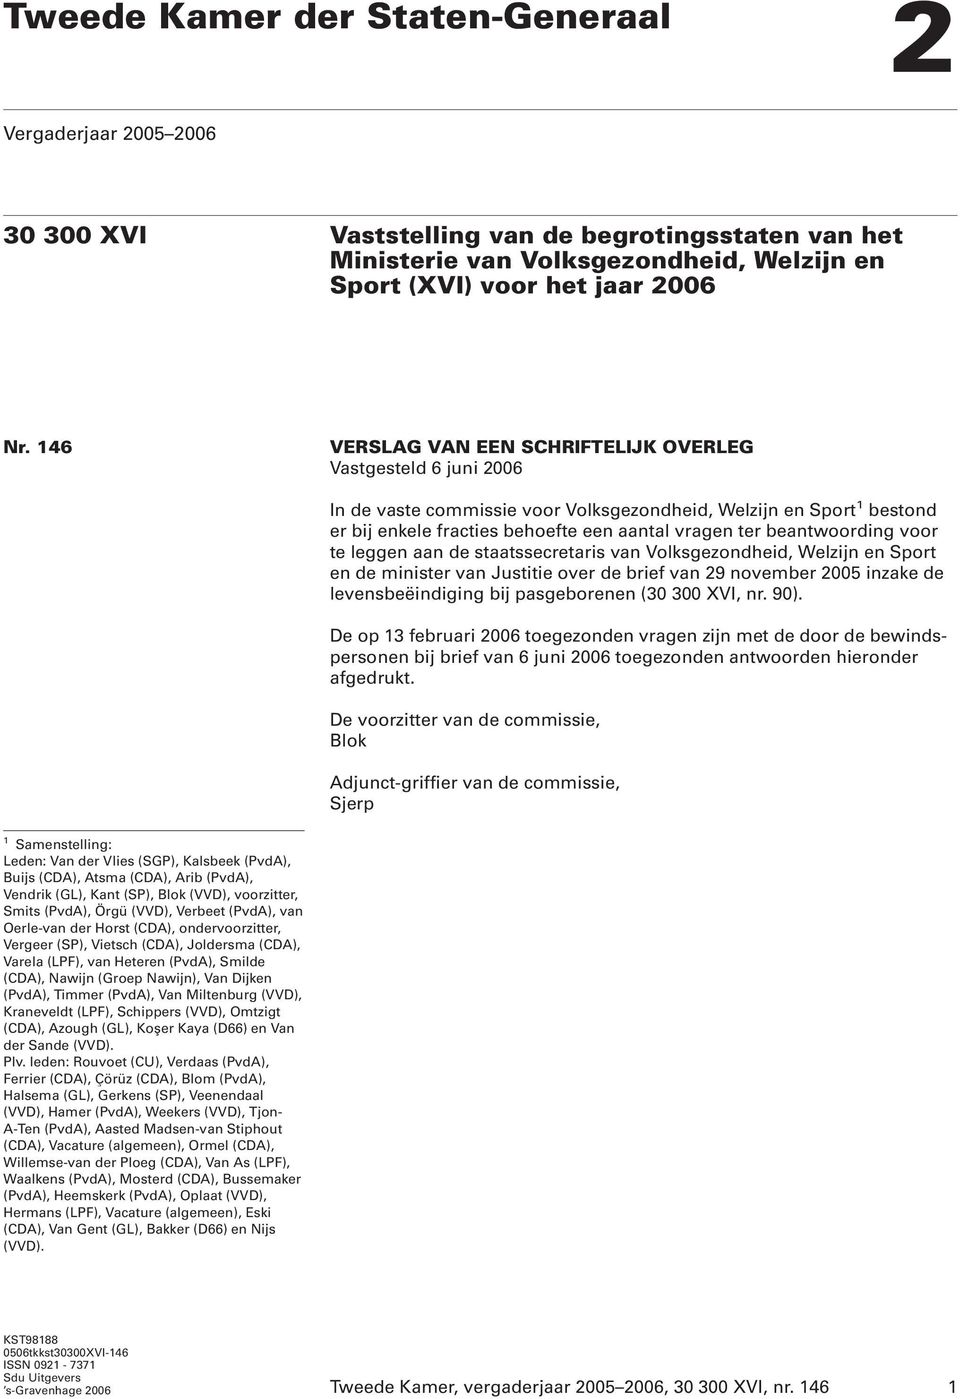 beantwoording voor te leggen aan de staatssecretaris van Volksgezondheid, Welzijn en Sport en de minister van Justitie over de brief van 29 november 2005 inzake de levensbeëindiging bij pasgeborenen